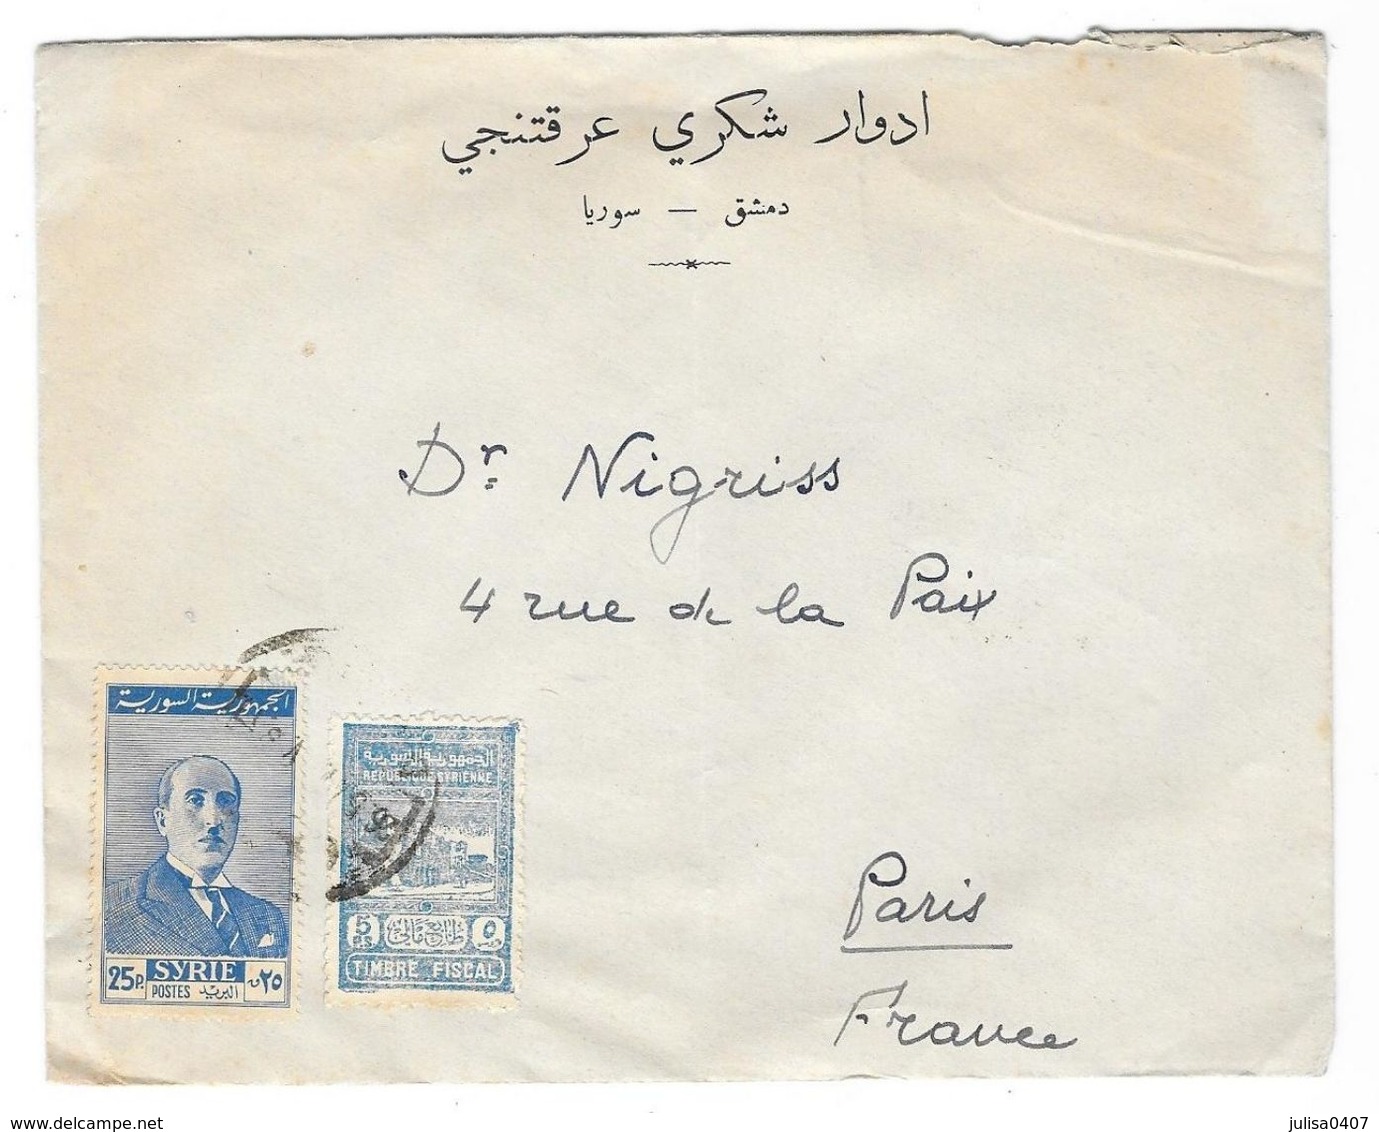 SYRIE  Enveloppe Avec Timbre Fiscal DAMAS à PARIS 1947(?) Publicité Edouard Aractingi - Syrie